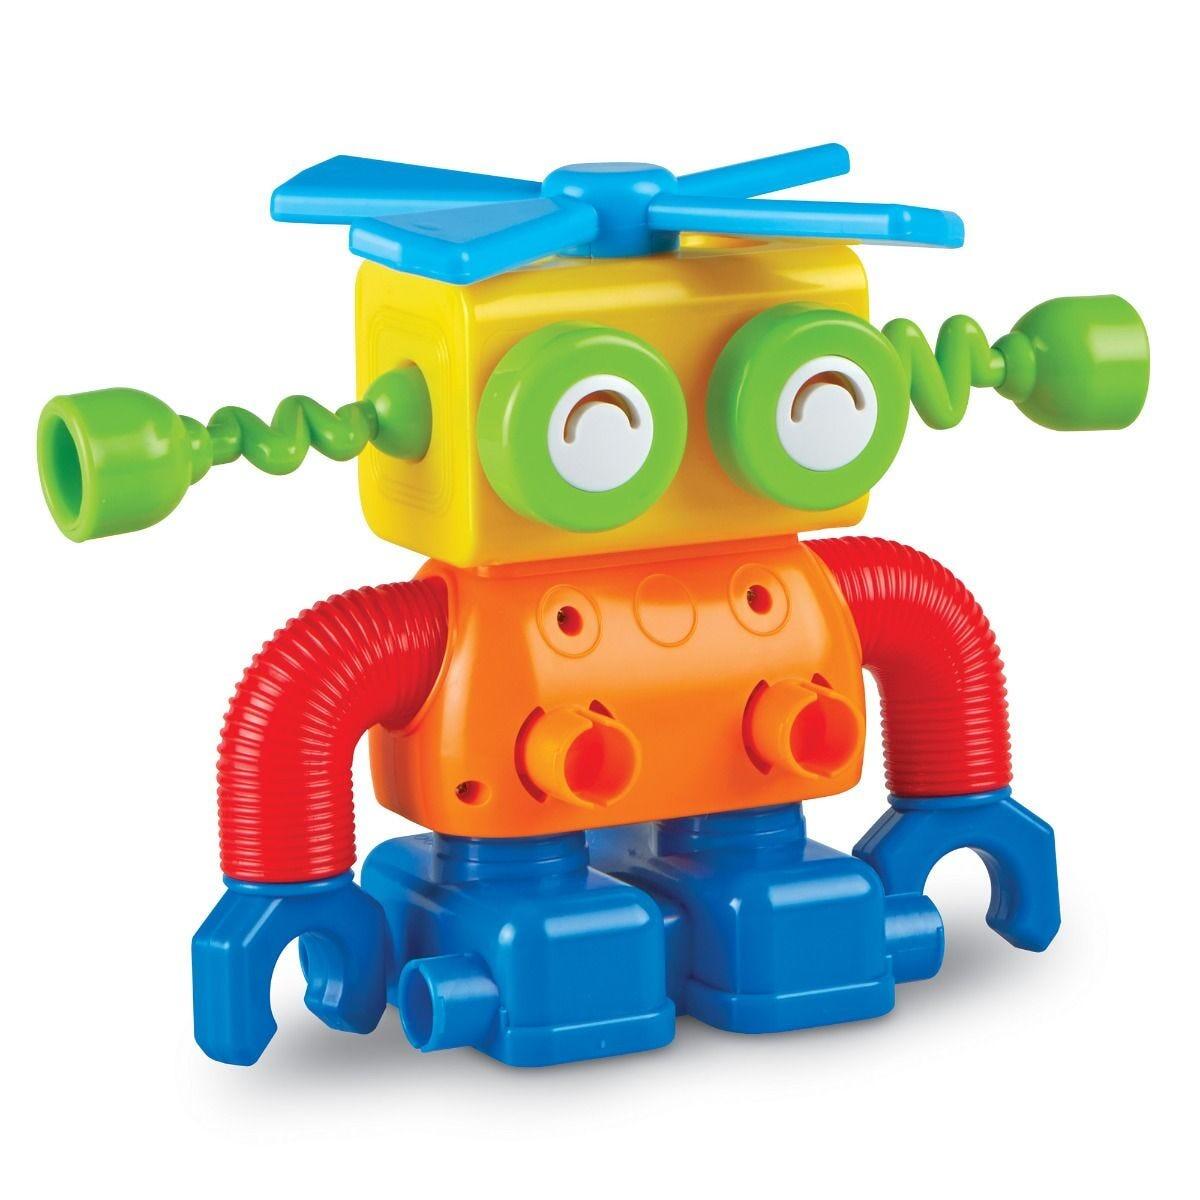 Hai sa construim - 1, 2, 3  Robotel colorat PlayLearn Toys